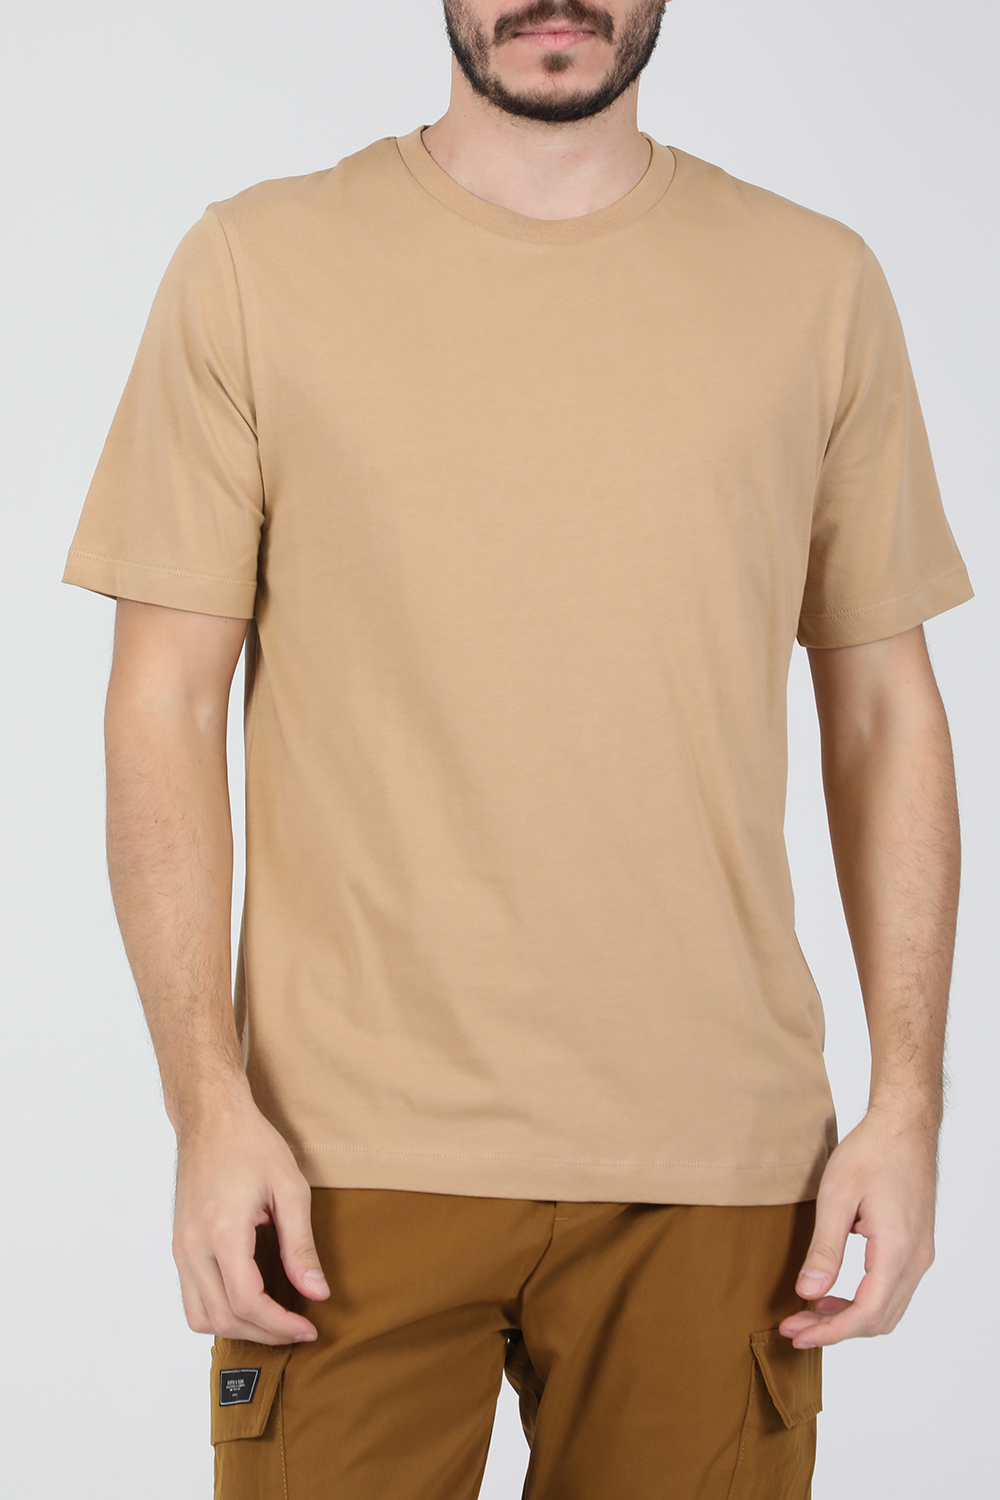 Ανδρικά/Ρούχα/Μπλούζες/Κοντομάνικες SCOTCH & SODA - Ανδρικό t-shirt SCOTCH & SODA Jersey μπεζ